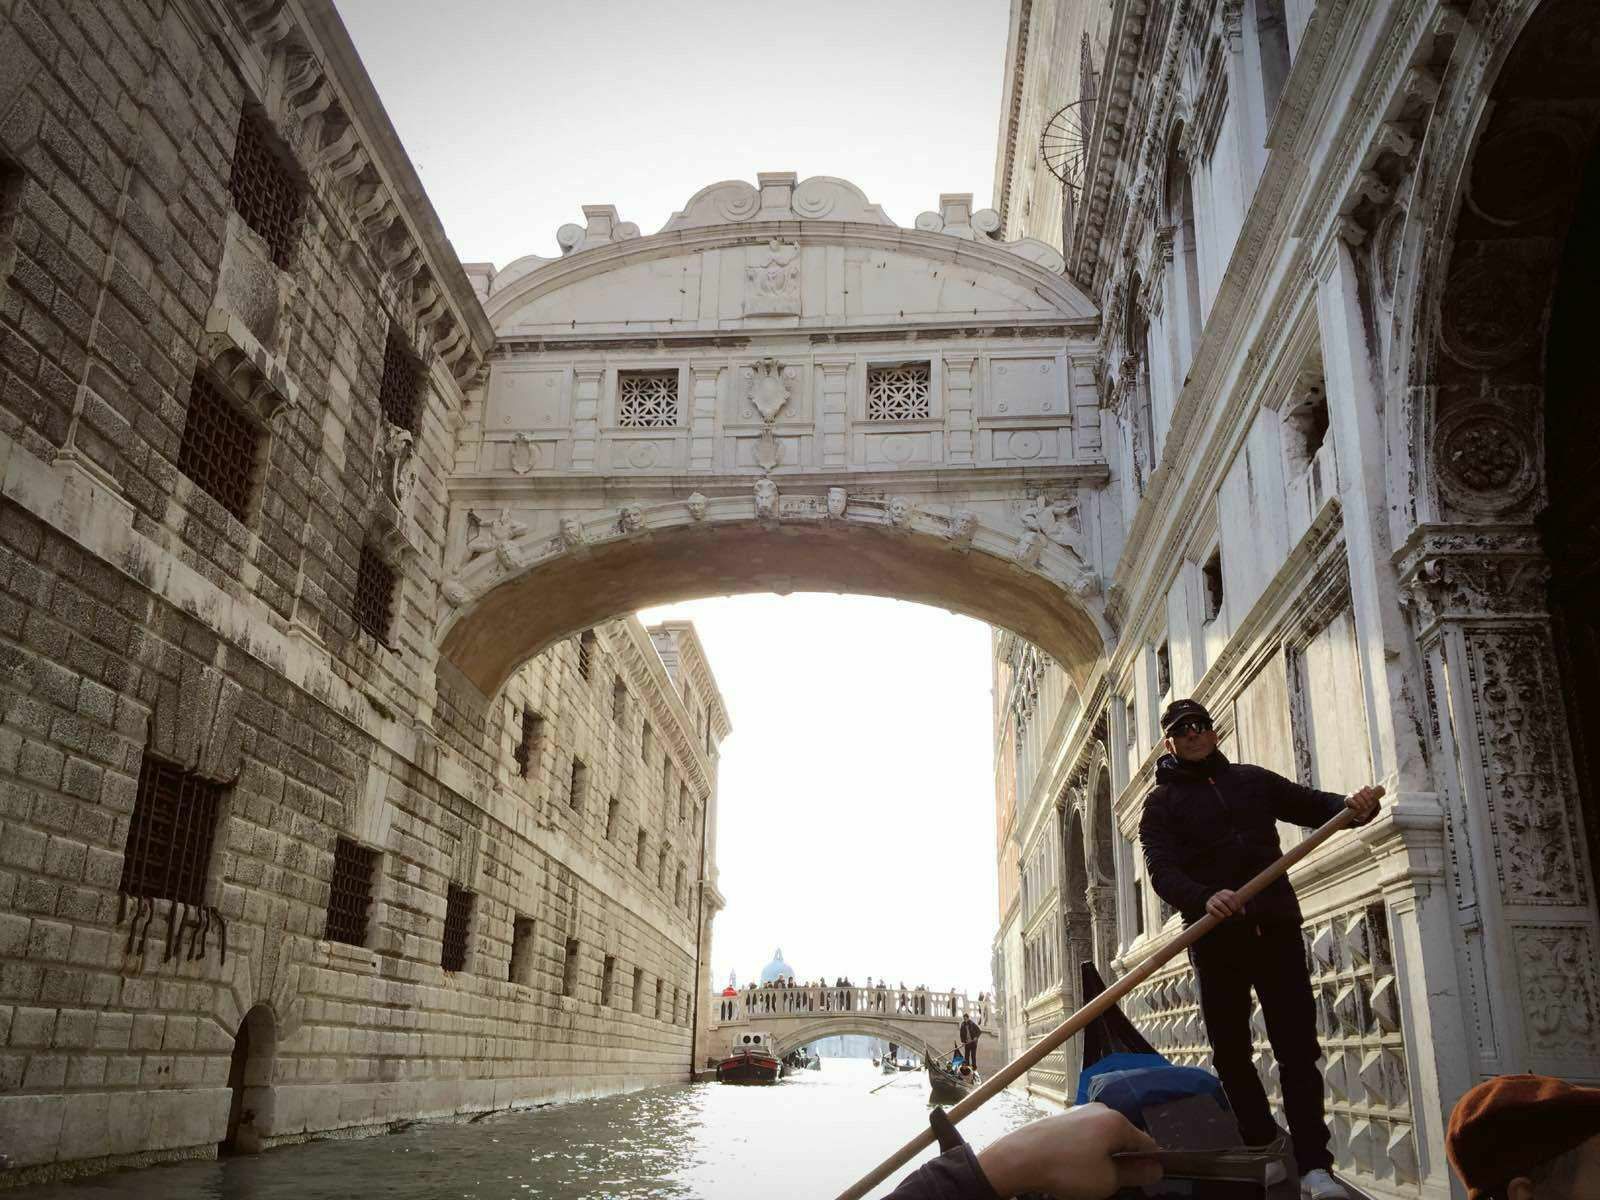 意大利洪水中威尼斯广场圣殿 库存图片. 图片 包括有 双翼飞机, 大教堂, 乘驾, 浮动, 浮体, 威尼斯 - 186688537